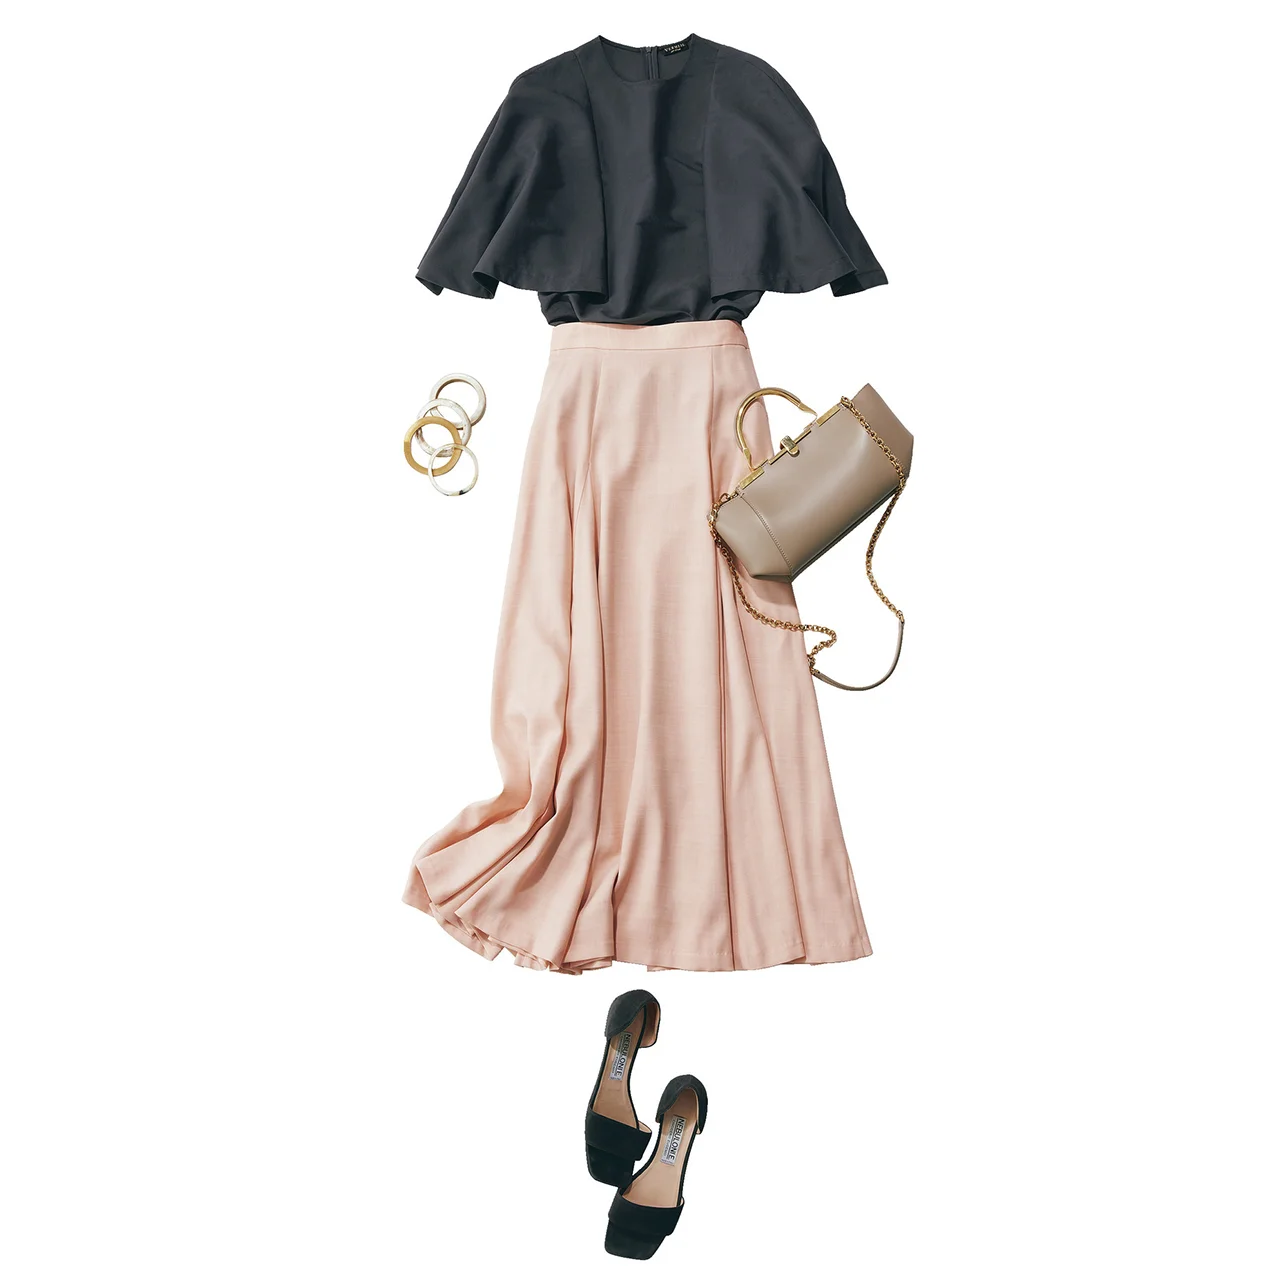 チャコールグレーのブラウス×ピンクスカートのメリハリ配色コーデ